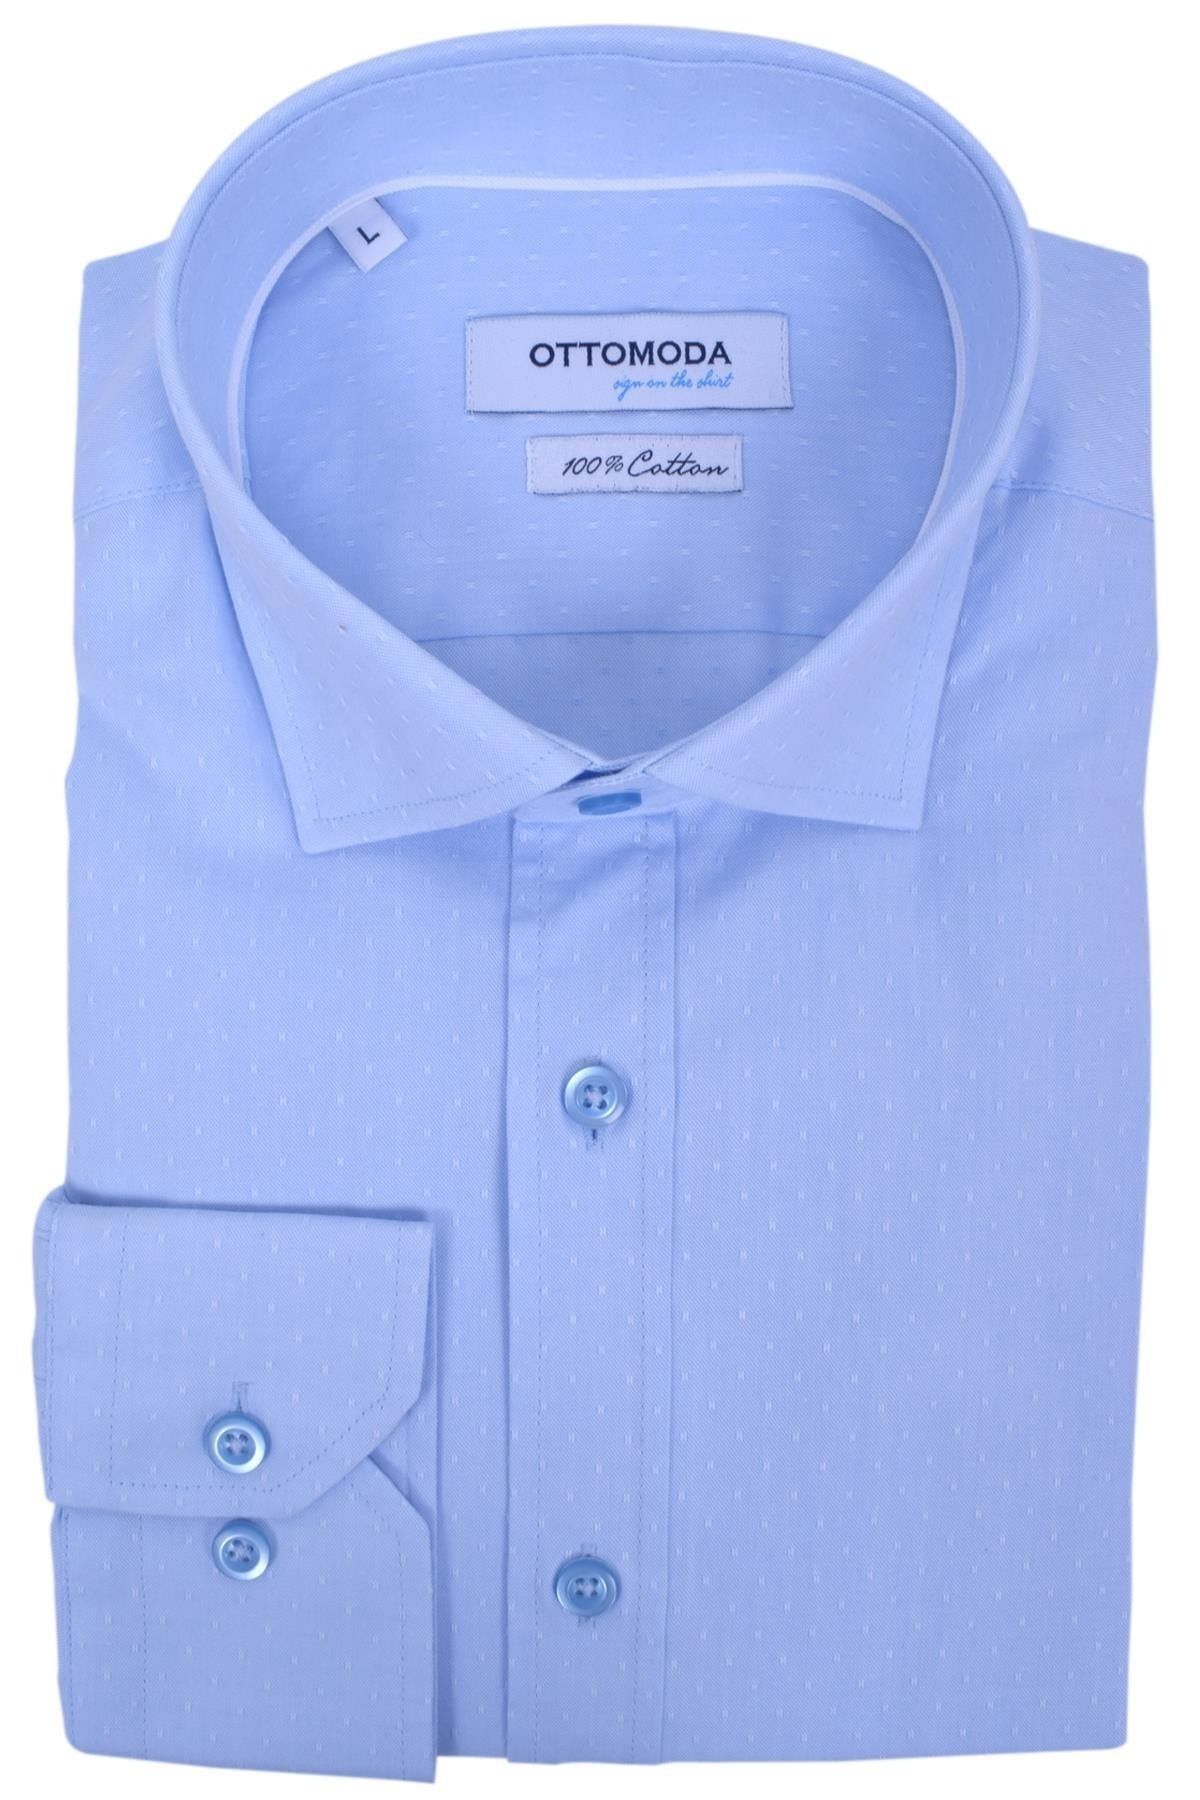 Ottomoda Erkek Açık Mavi Armürlü Uzun Kollu %100 Pamuklu Gömlek,ot-c-20159